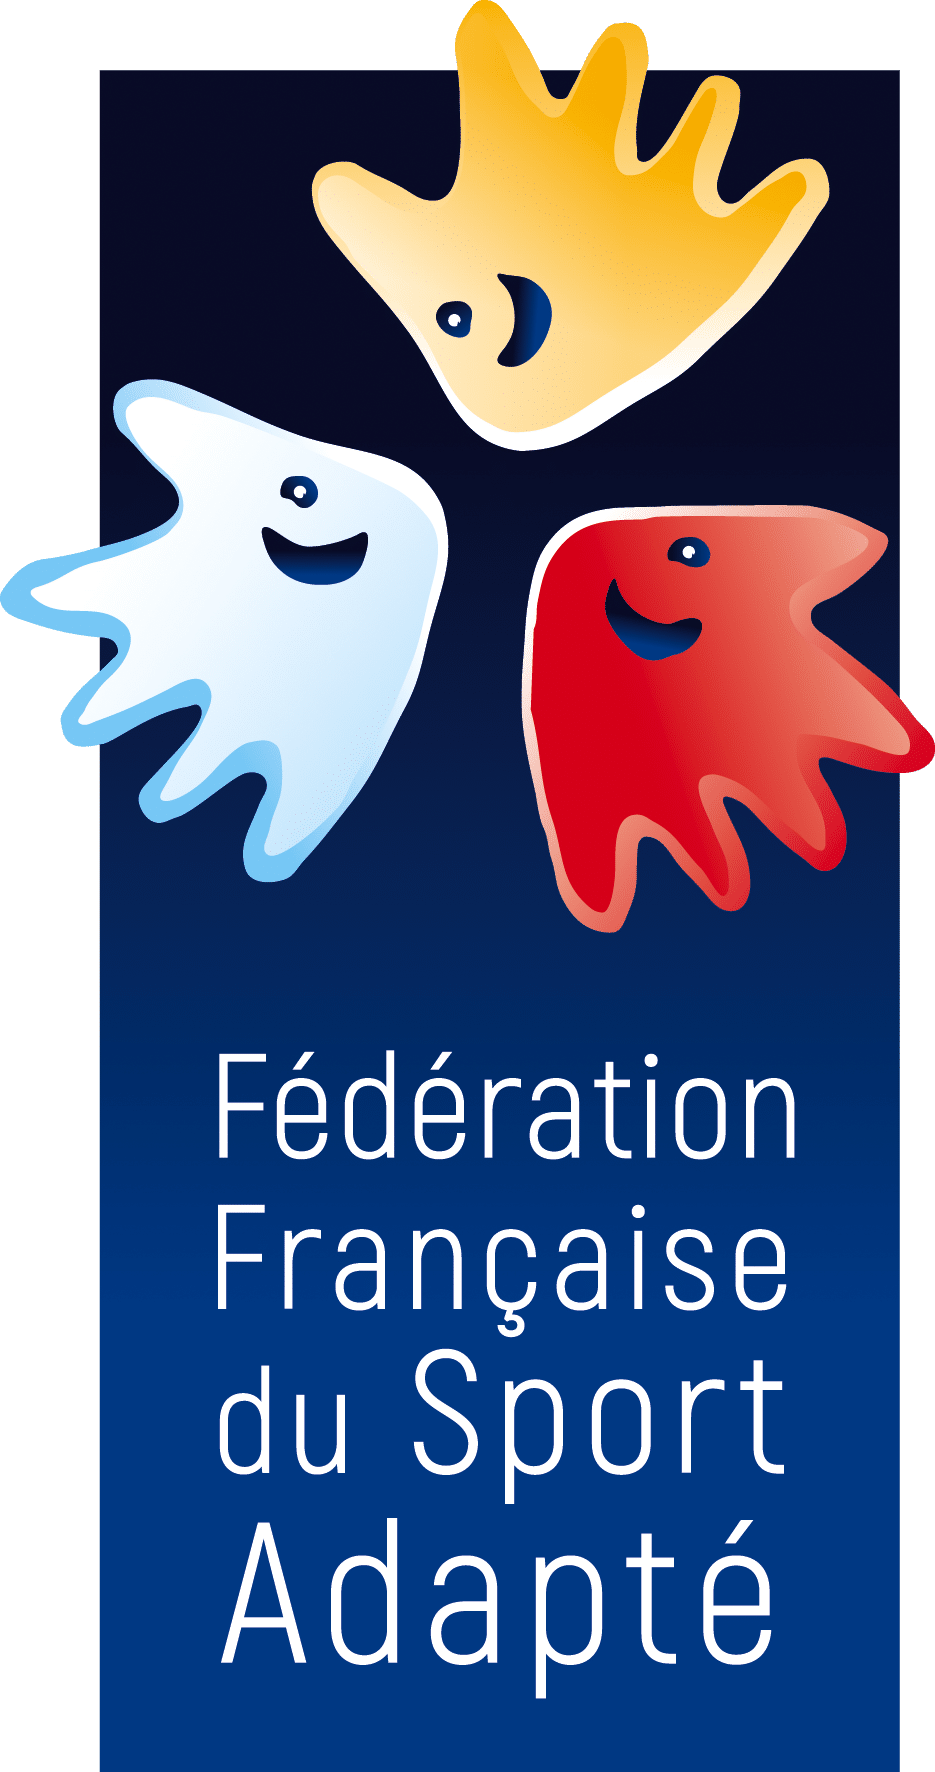 Fédération Française de Sport Adapté